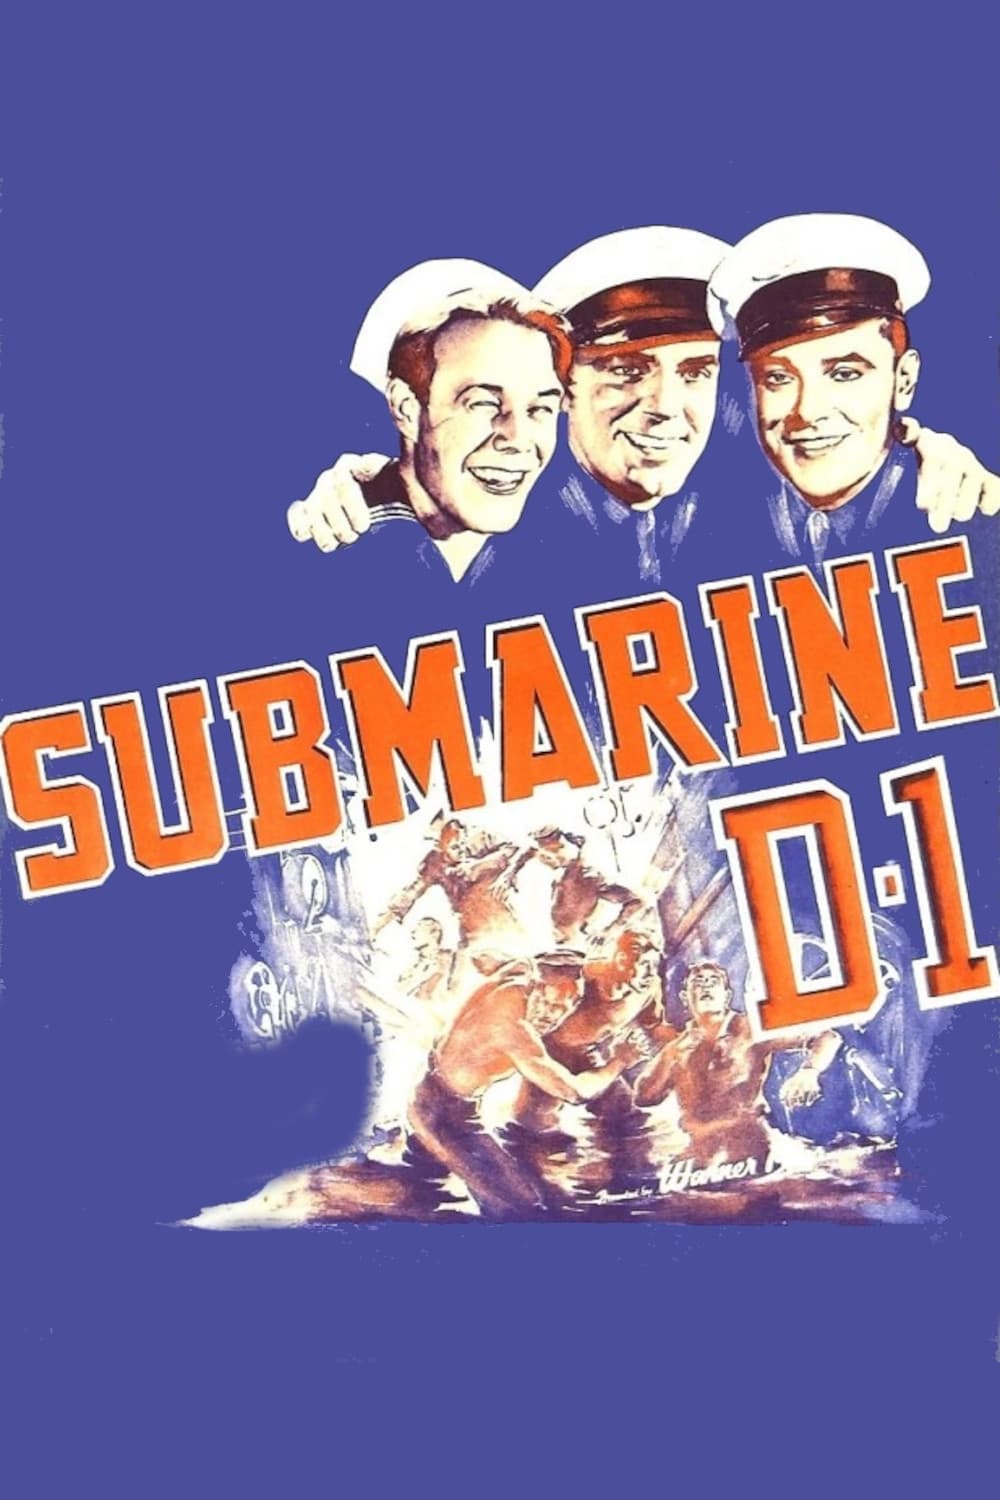 Submarine D-1 (1937)